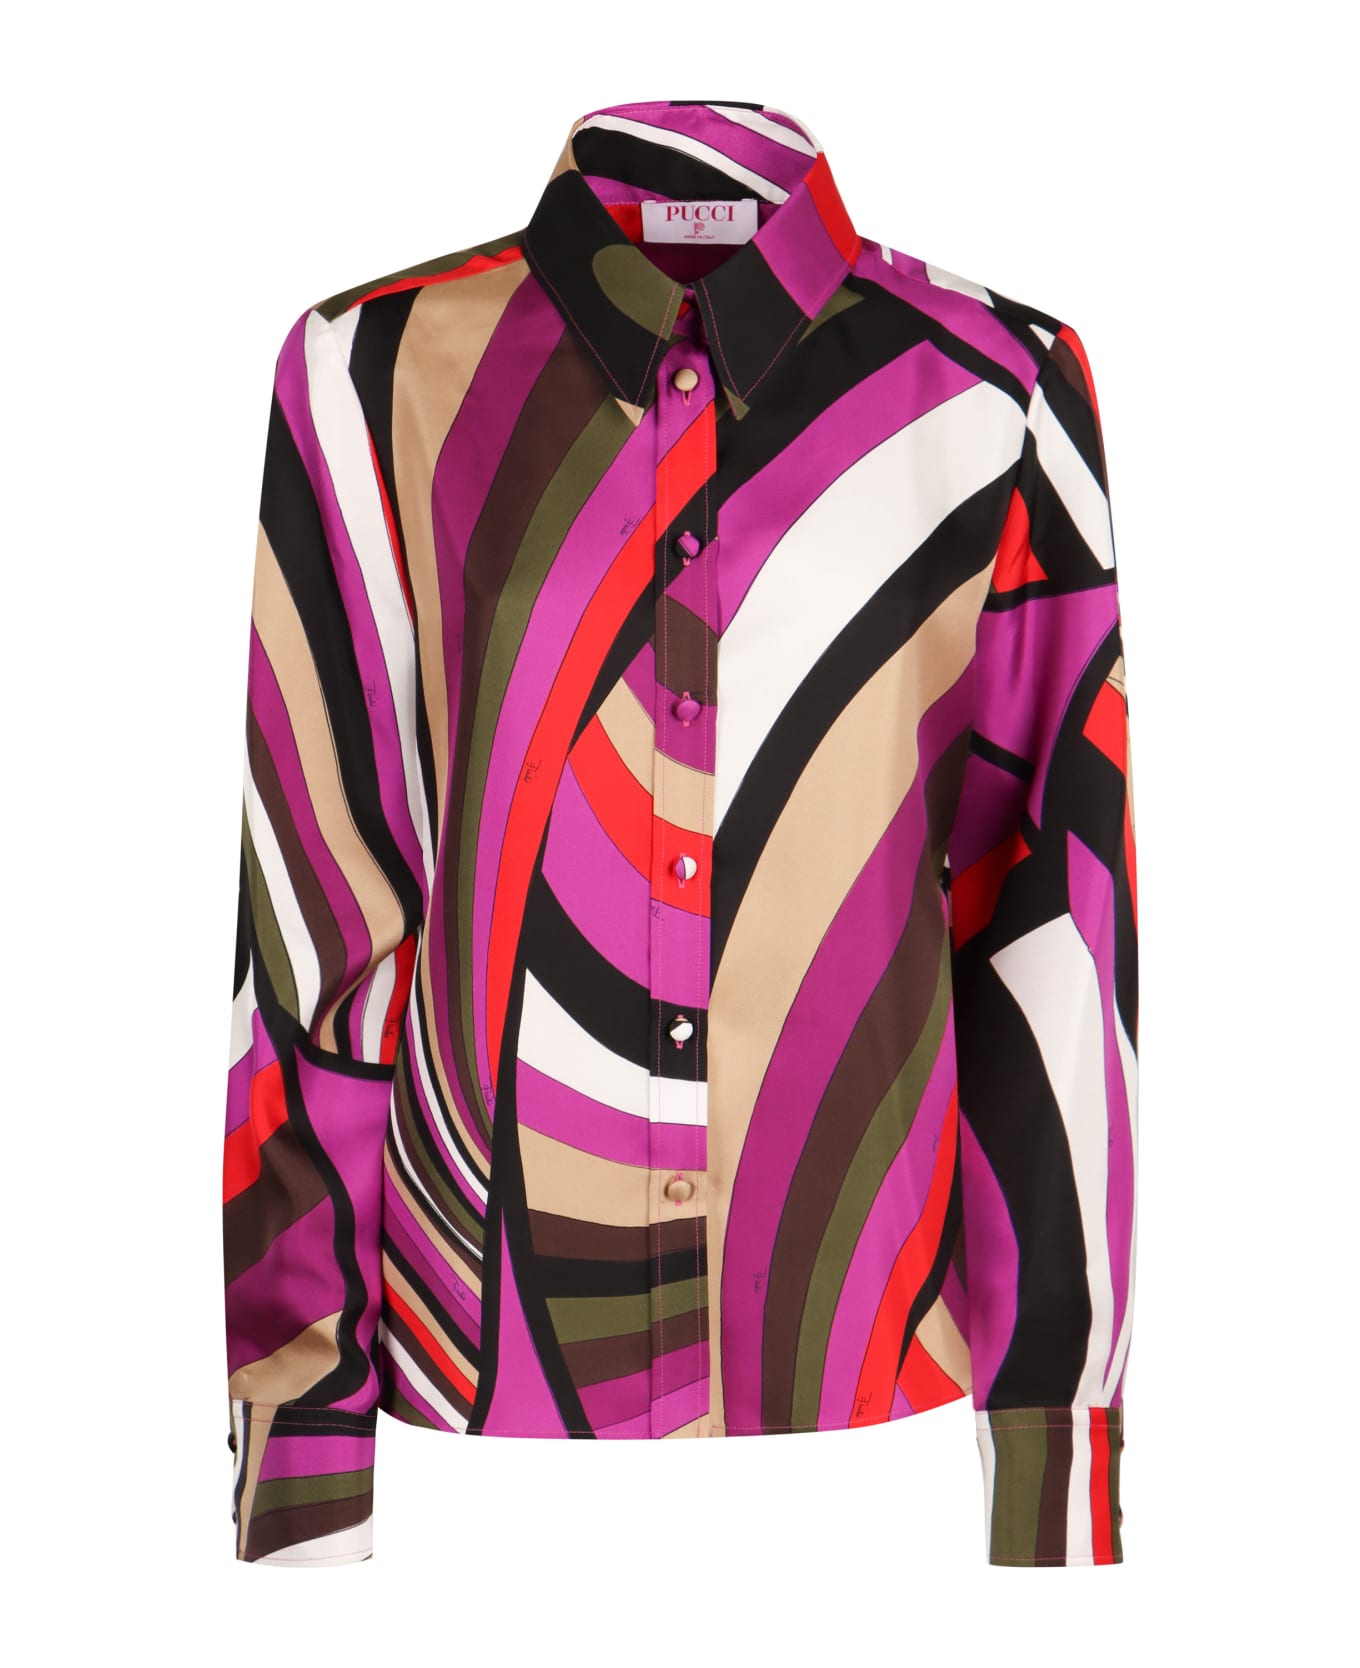 Pucci Printed Silk Shirt - Fuchsia